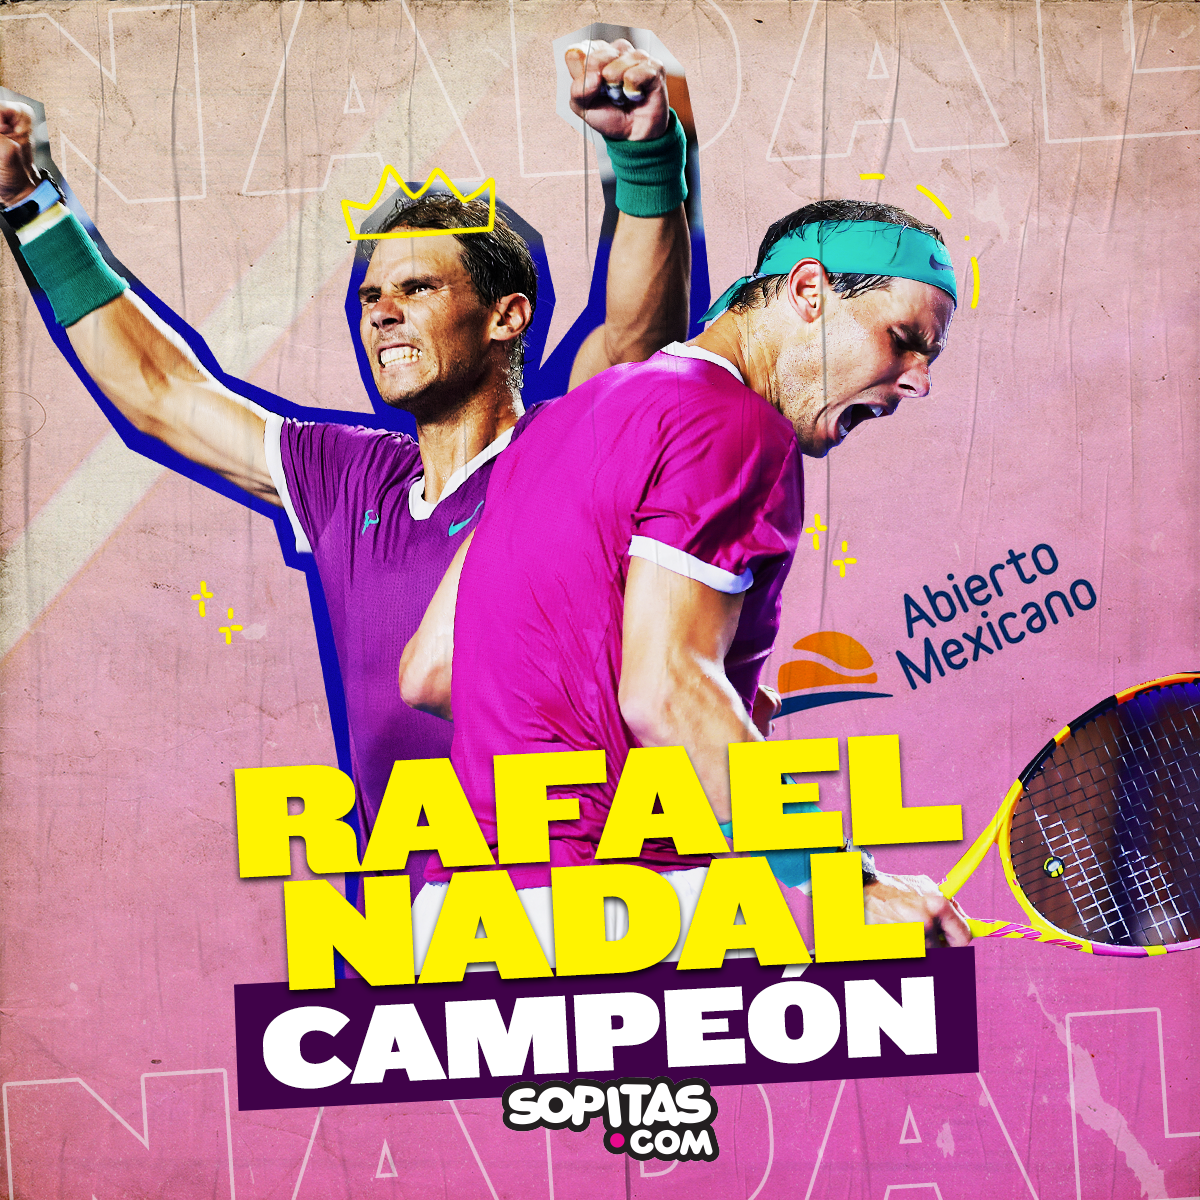 Nadal campeón Abierto Mexicano